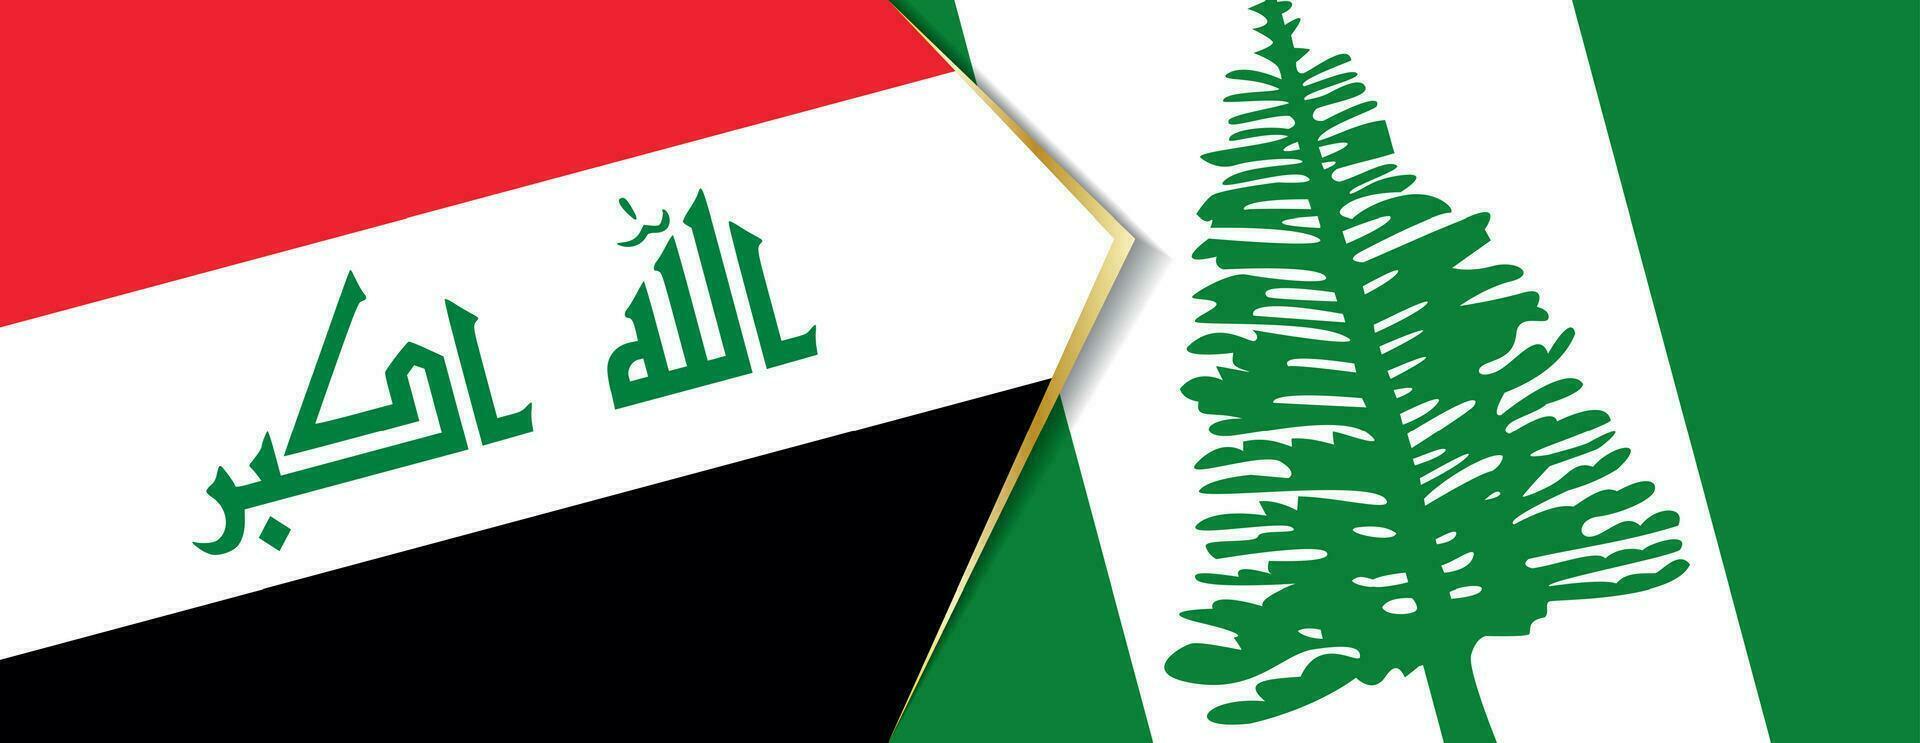 Iraque e Norfolk ilha bandeiras, dois vetor bandeiras.